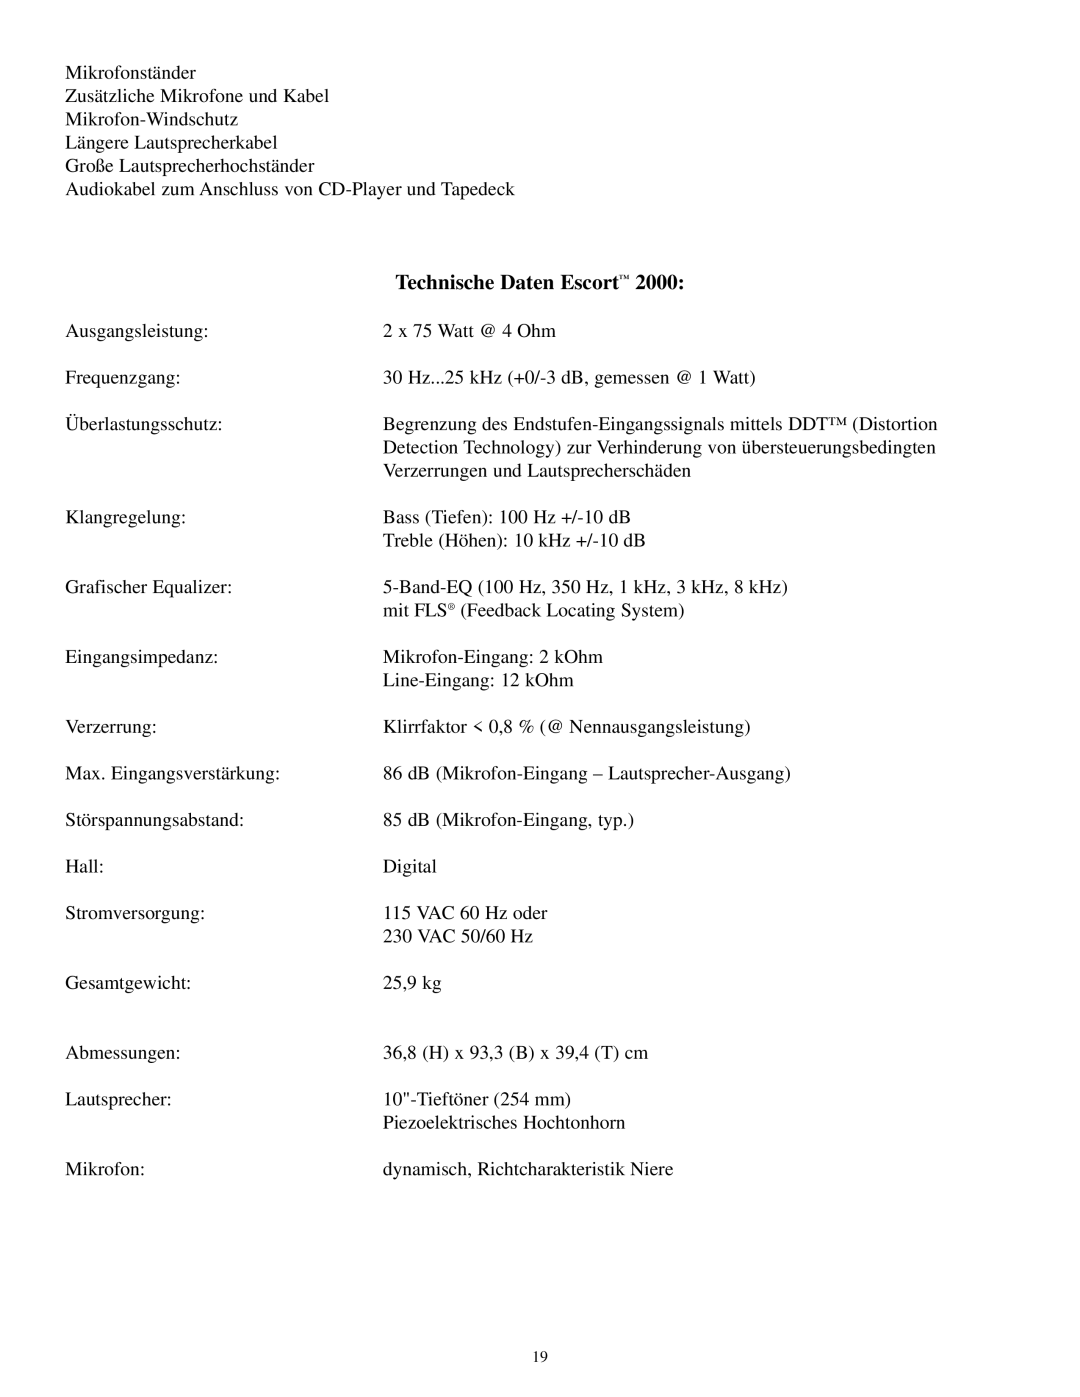 Musica 2000 manual Technische Daten Escort, Piezoelektrisches Hochtonhorn 